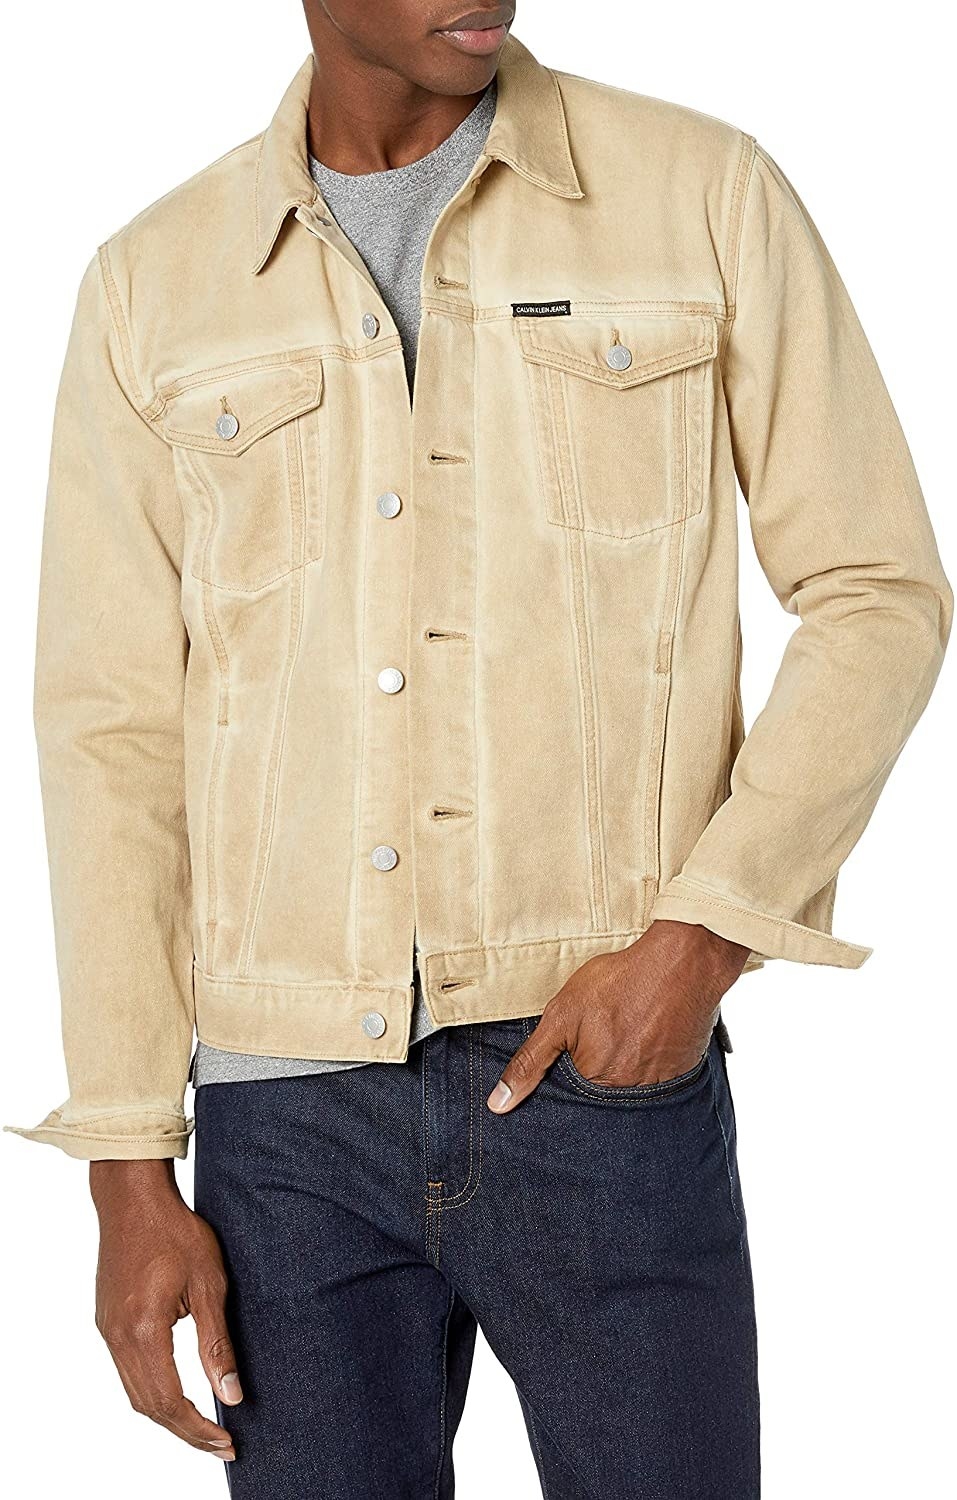 Model in the beige jacket